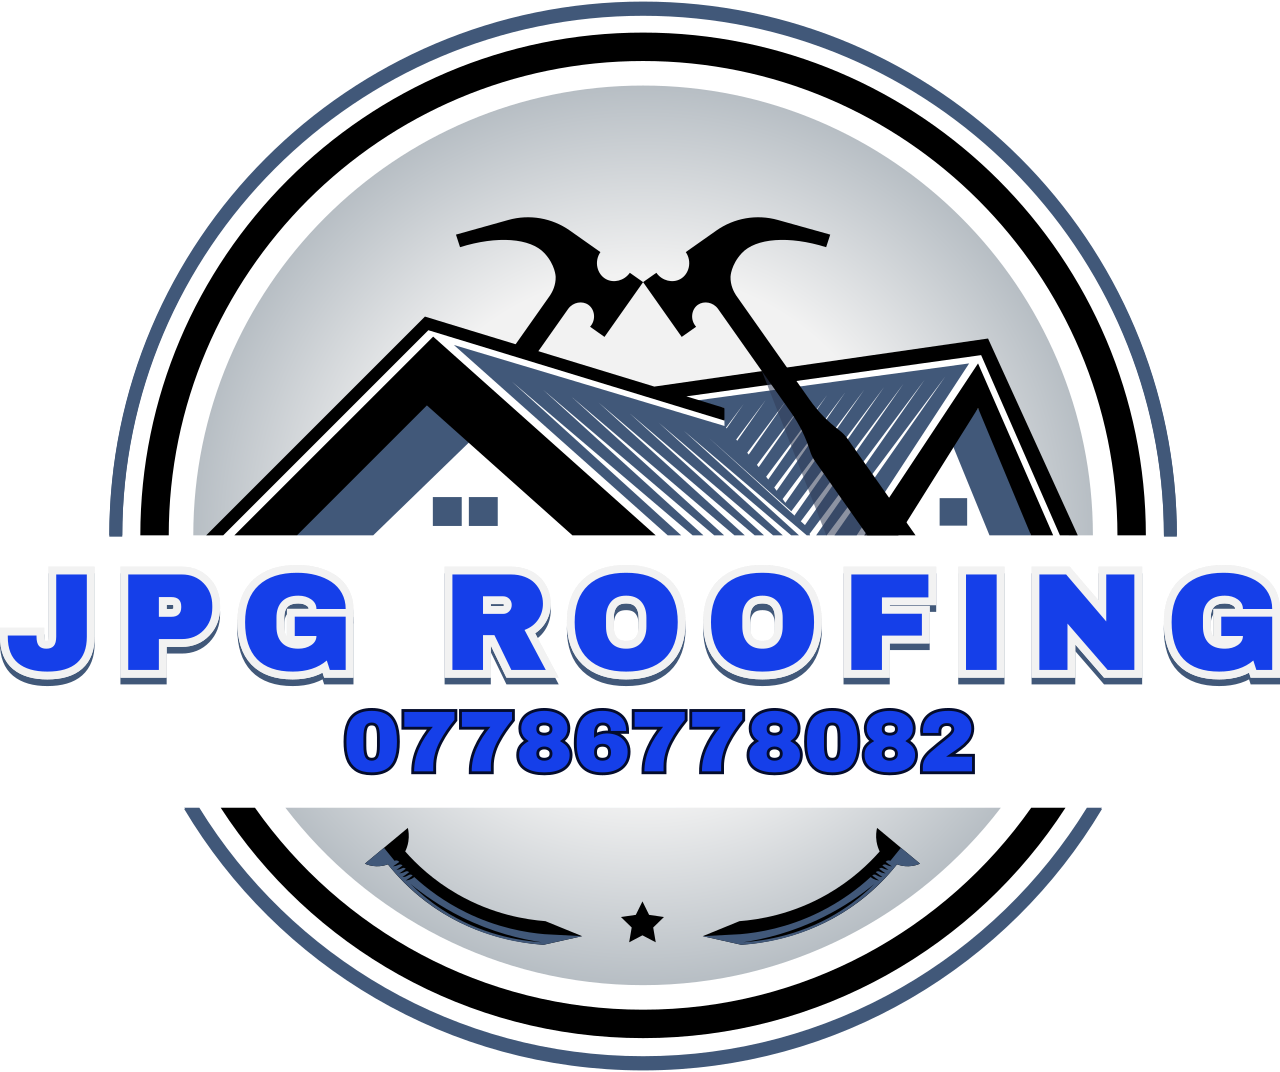 Jpg roofing's logo